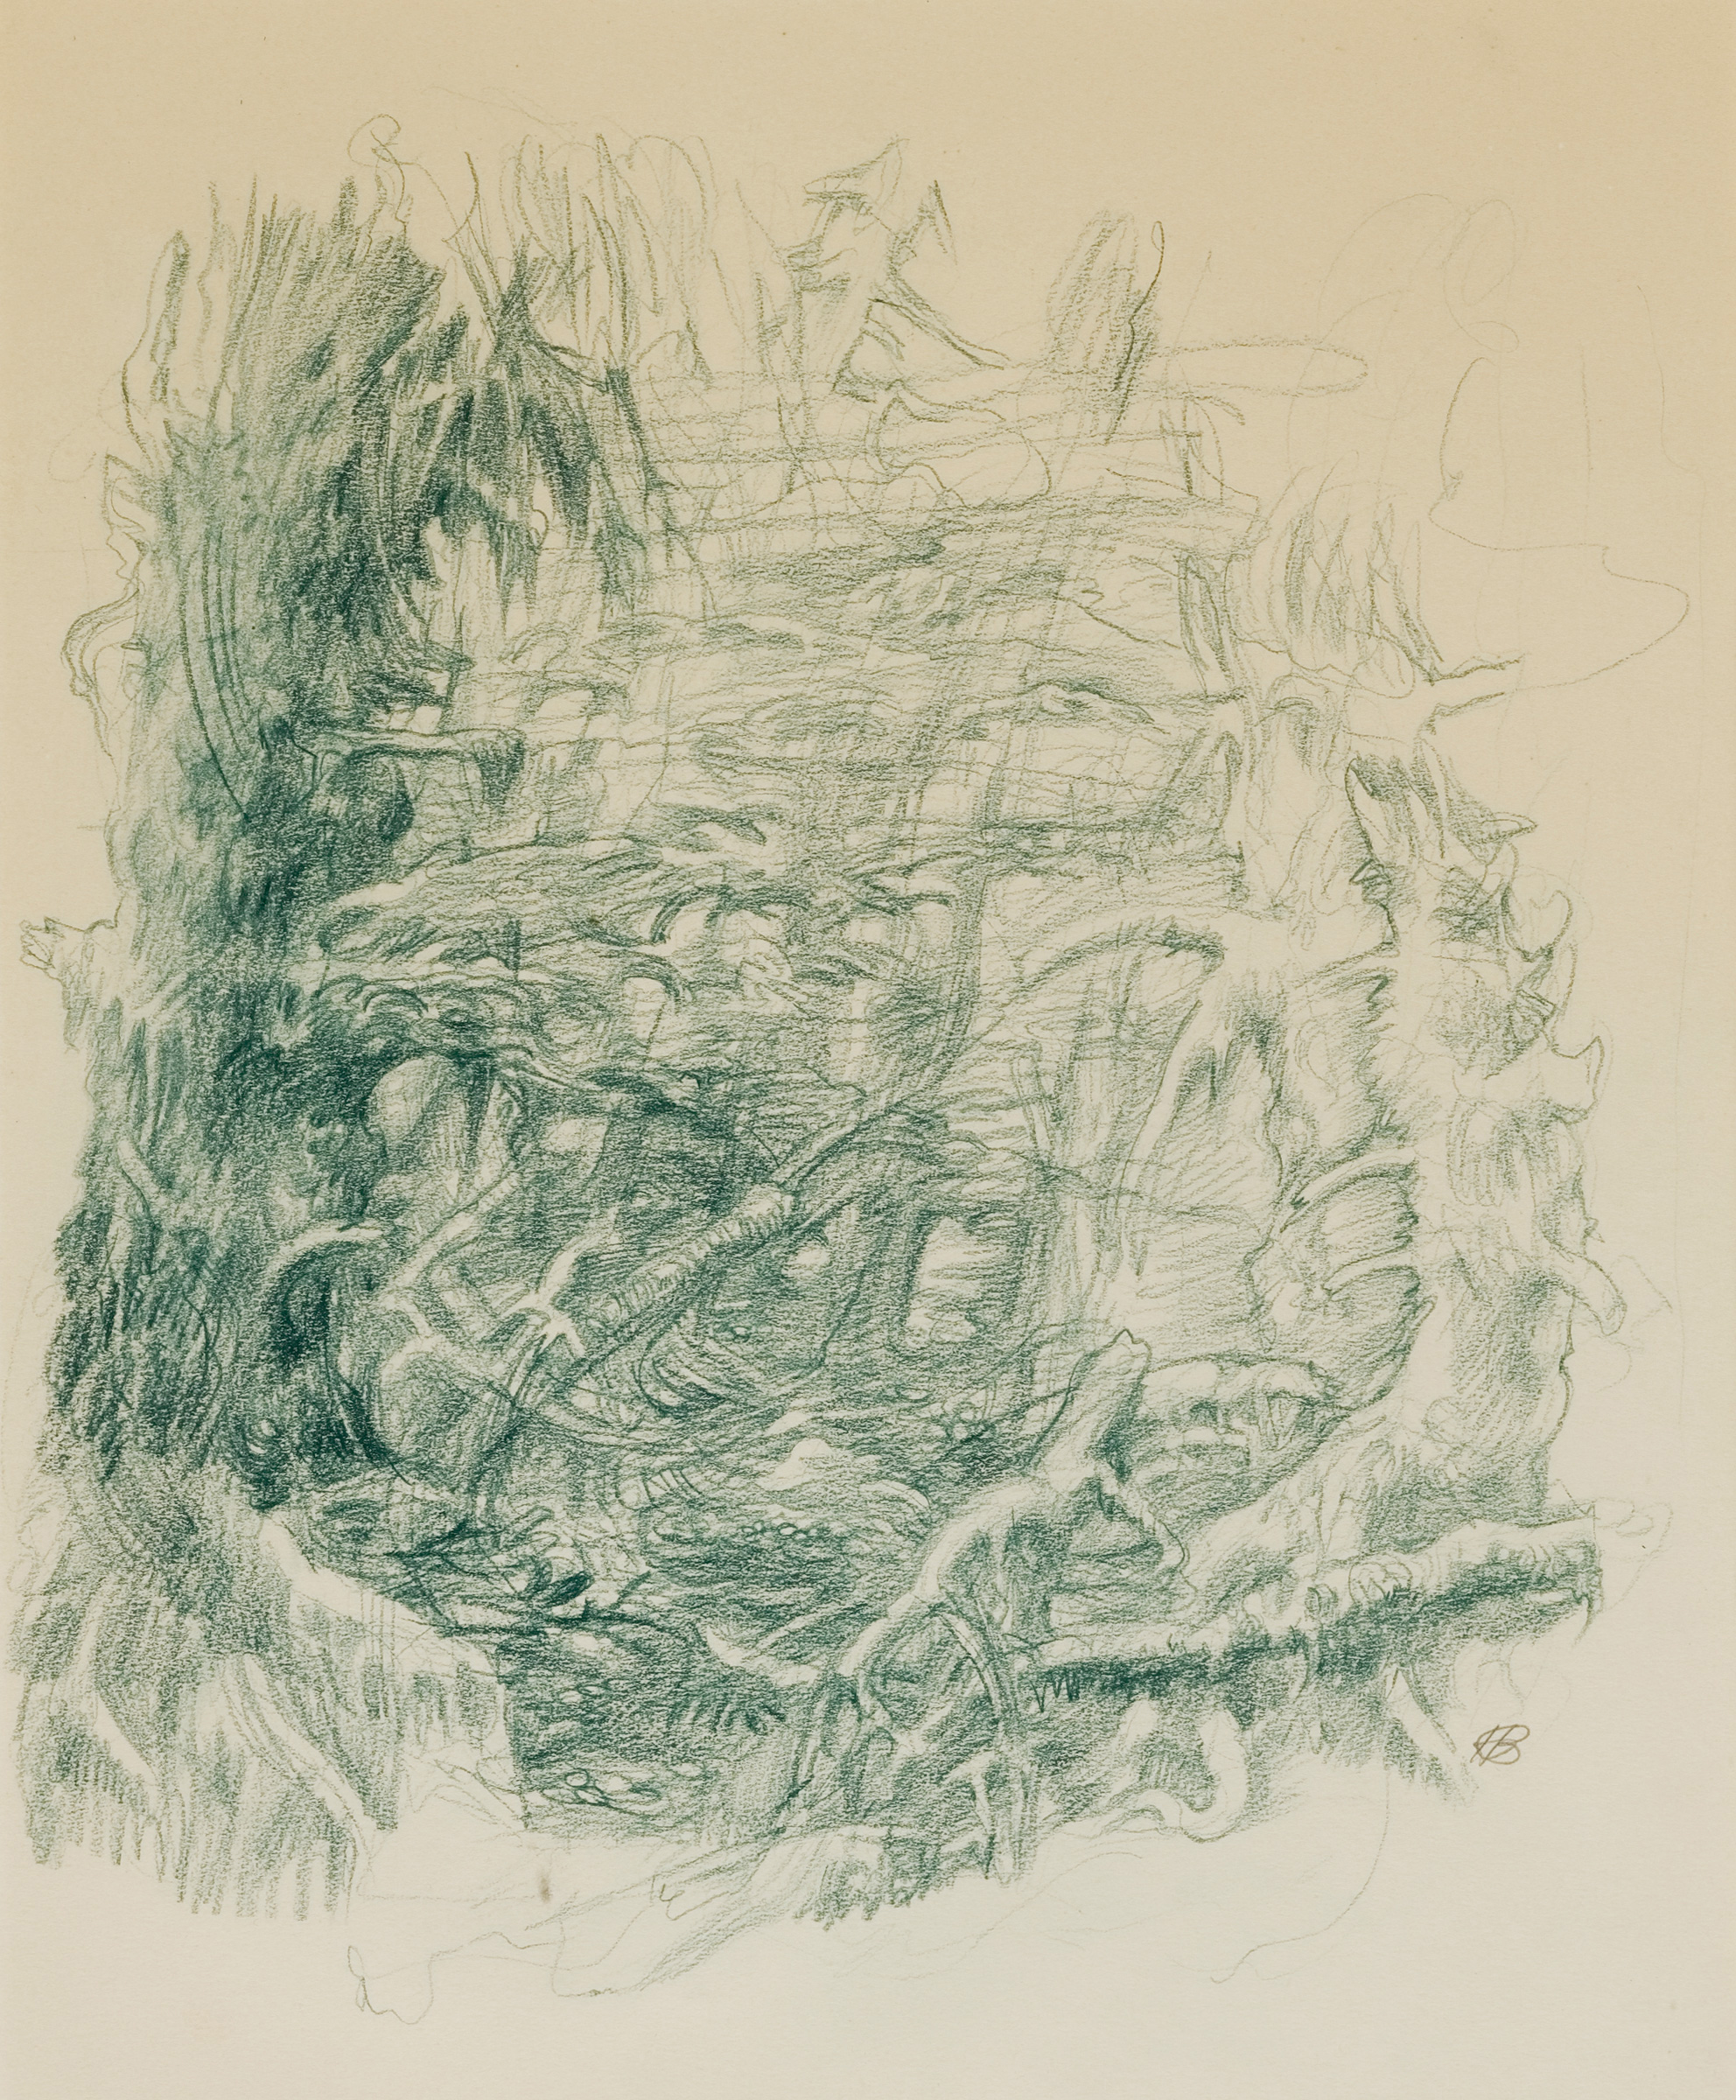 Landscape Study (c. 1970)